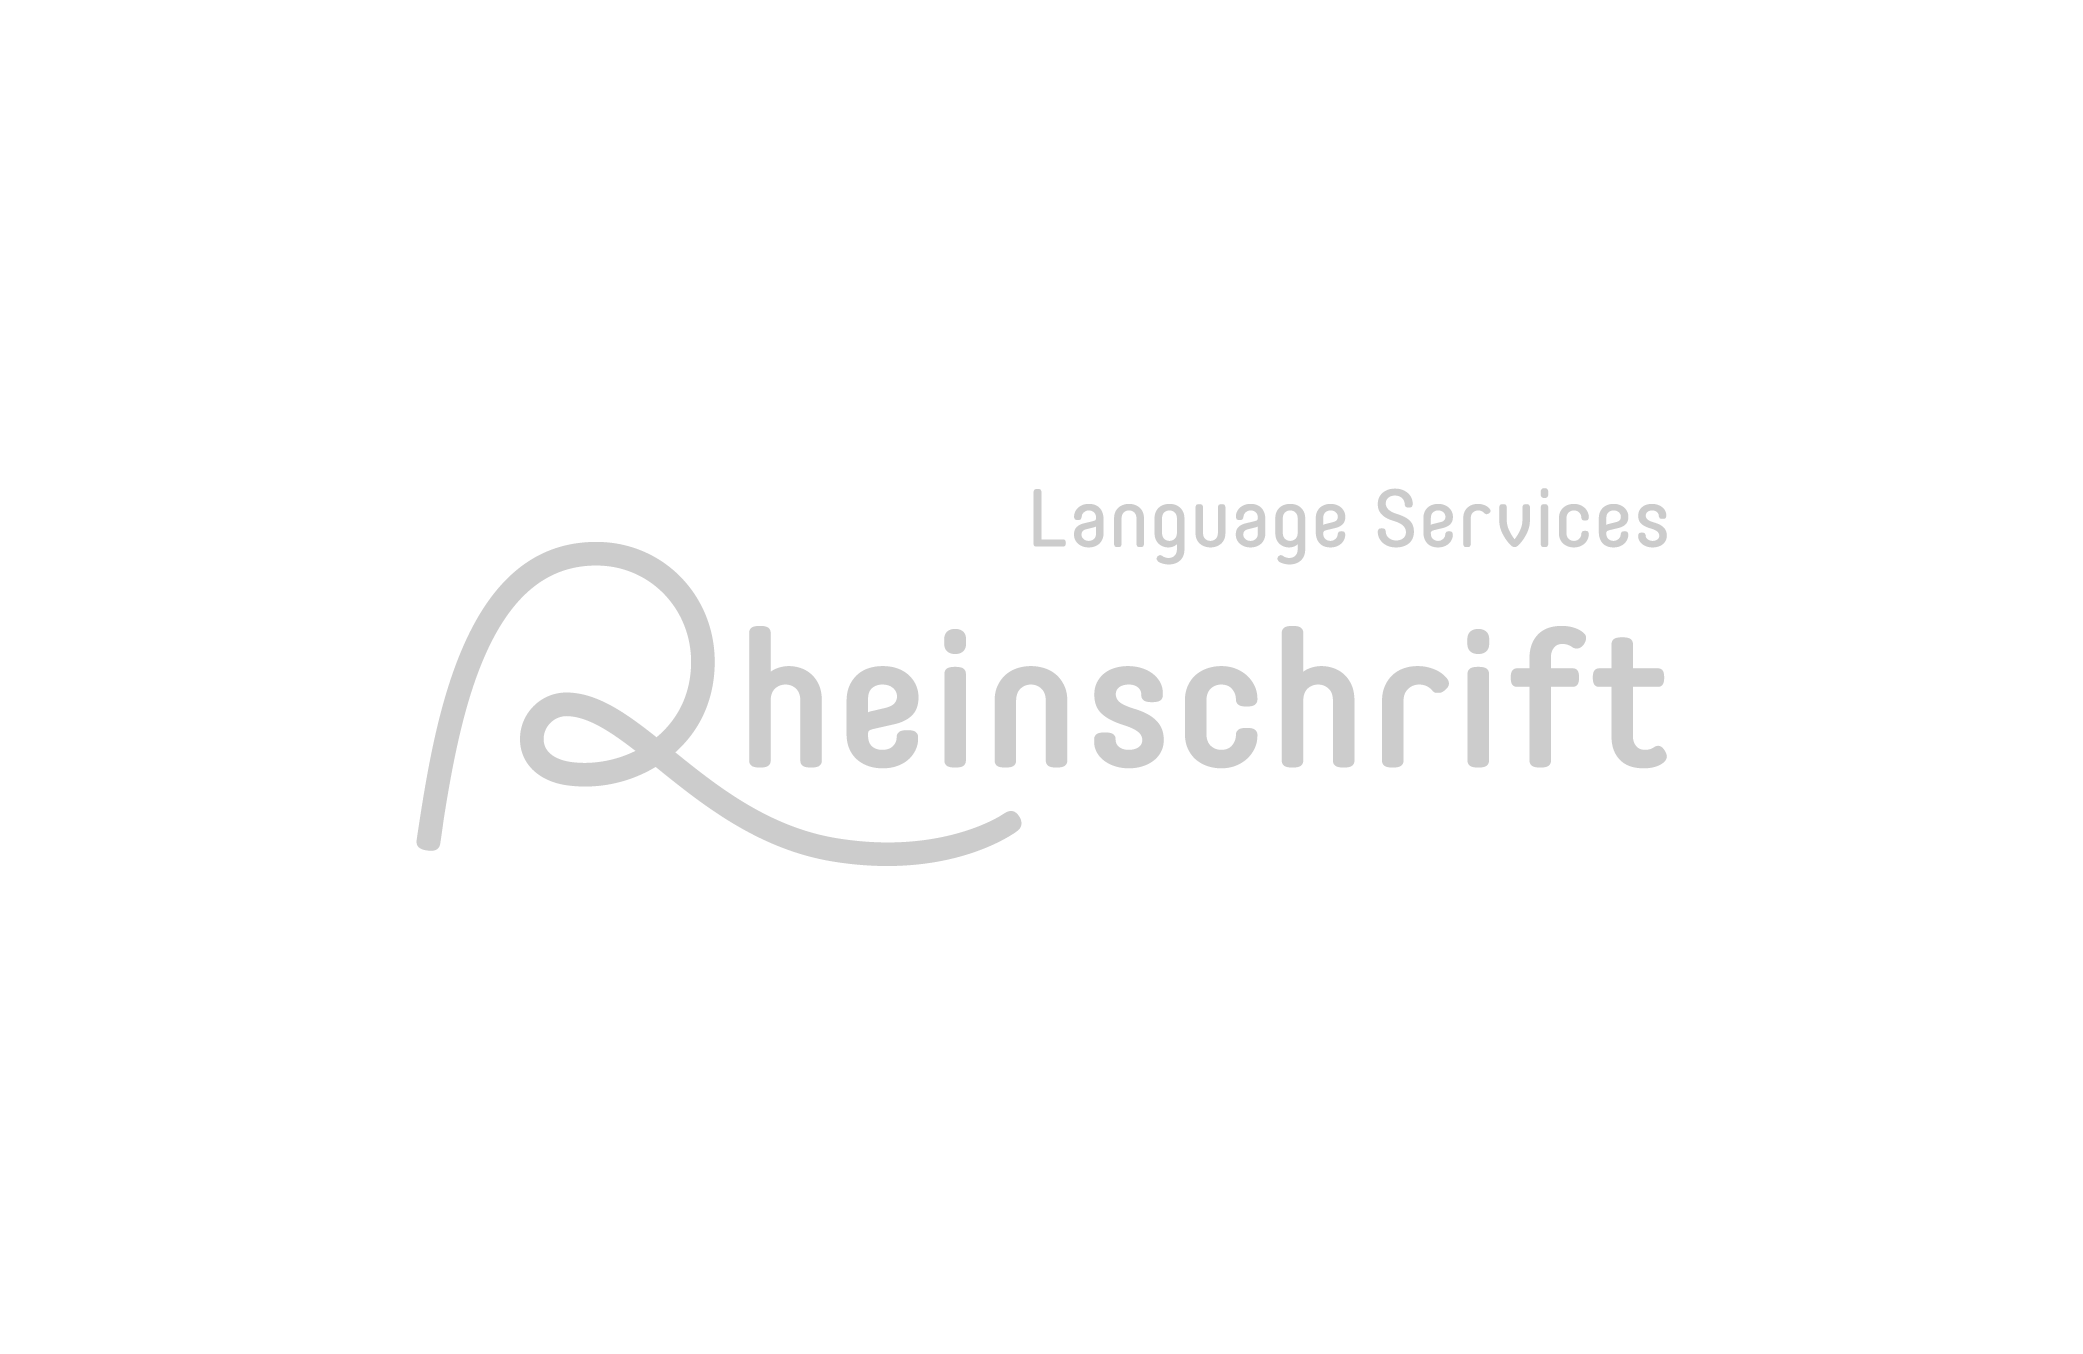 Rheinschrift Language Services